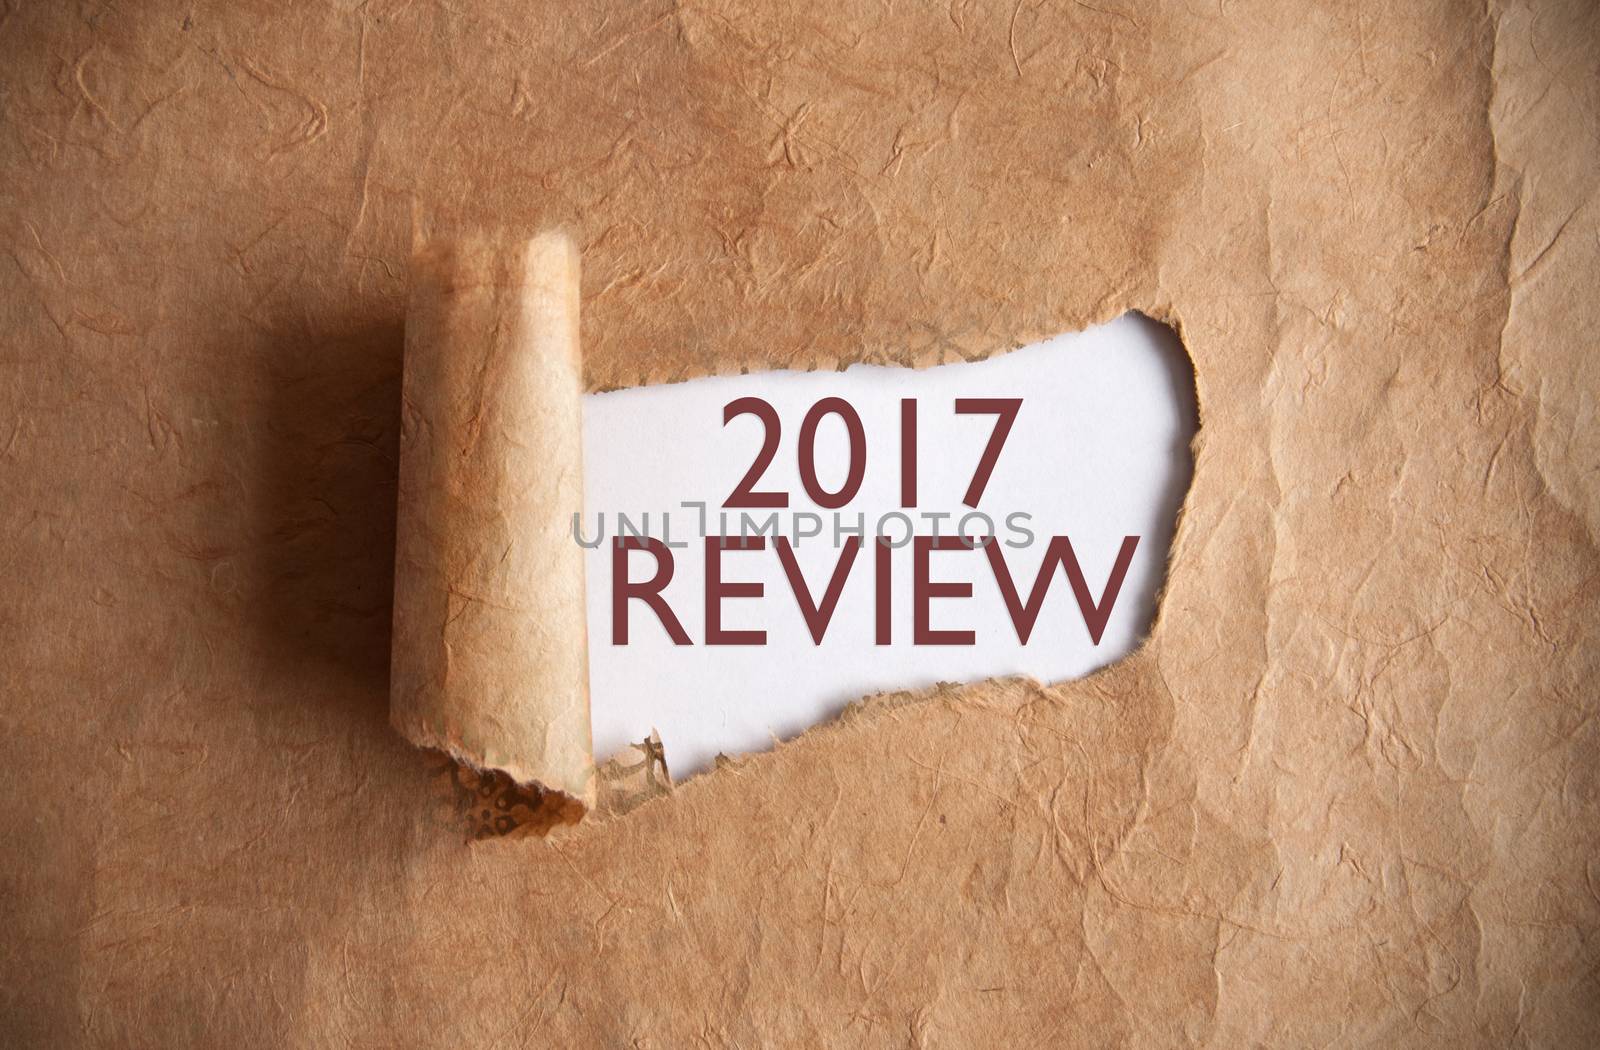 2017 review by unikpix